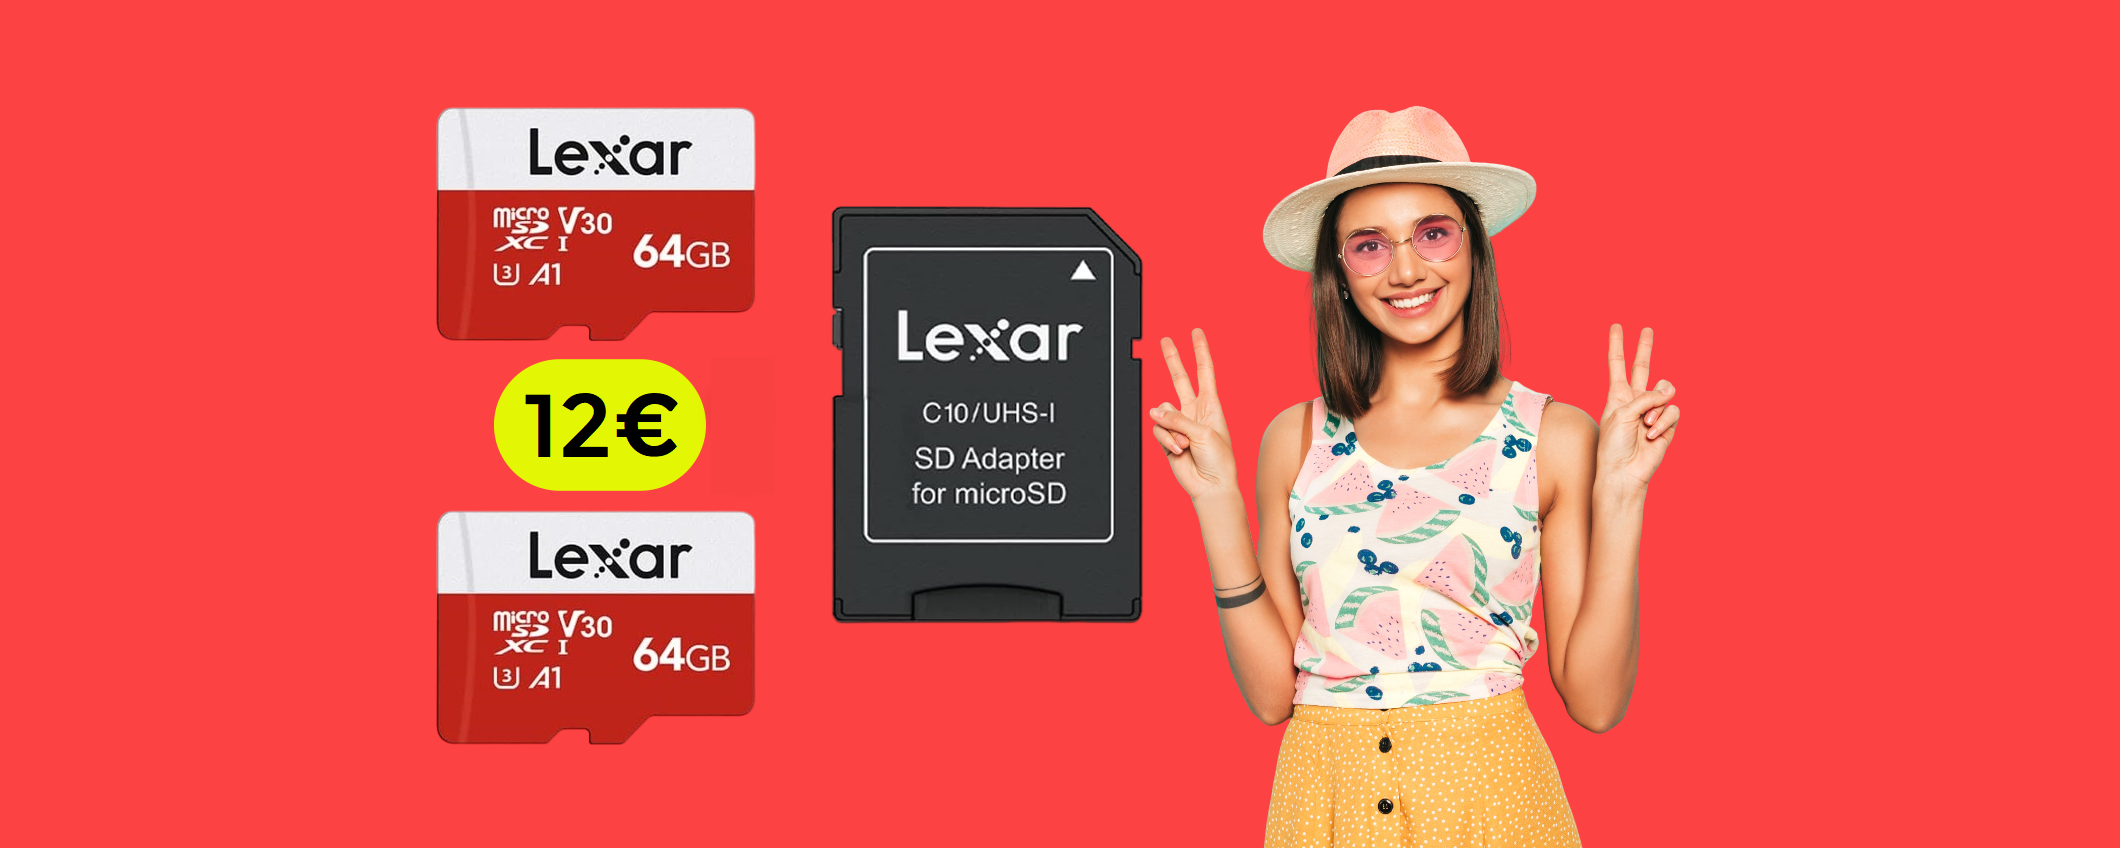 MicroSD 64GB Lexar: bastano 12€ per portare a casa la COPPIA